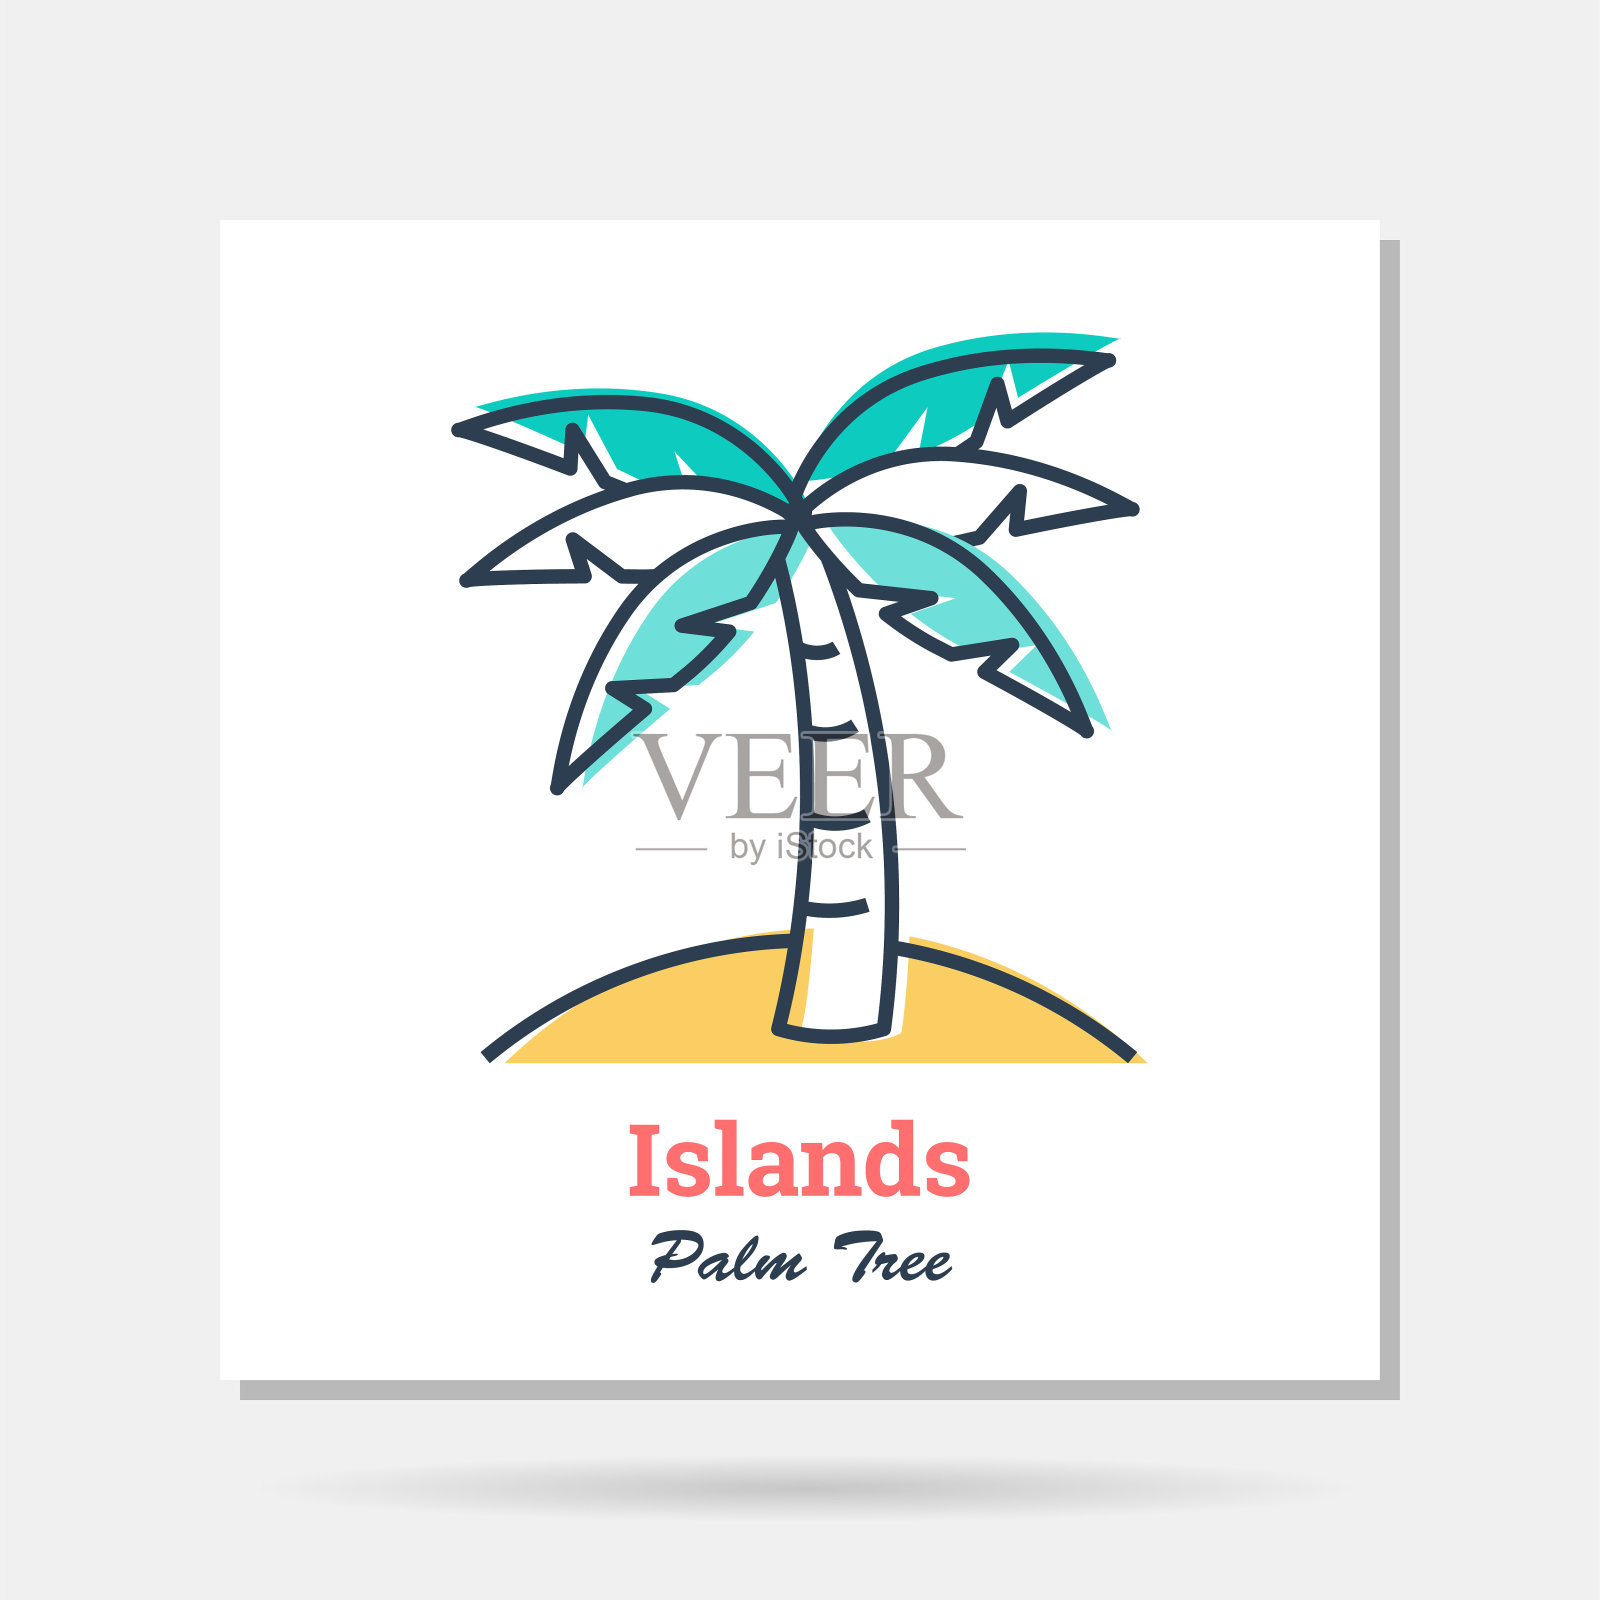 矢量简单公司标志的例子-岛屿-棕榈树插画图片素材